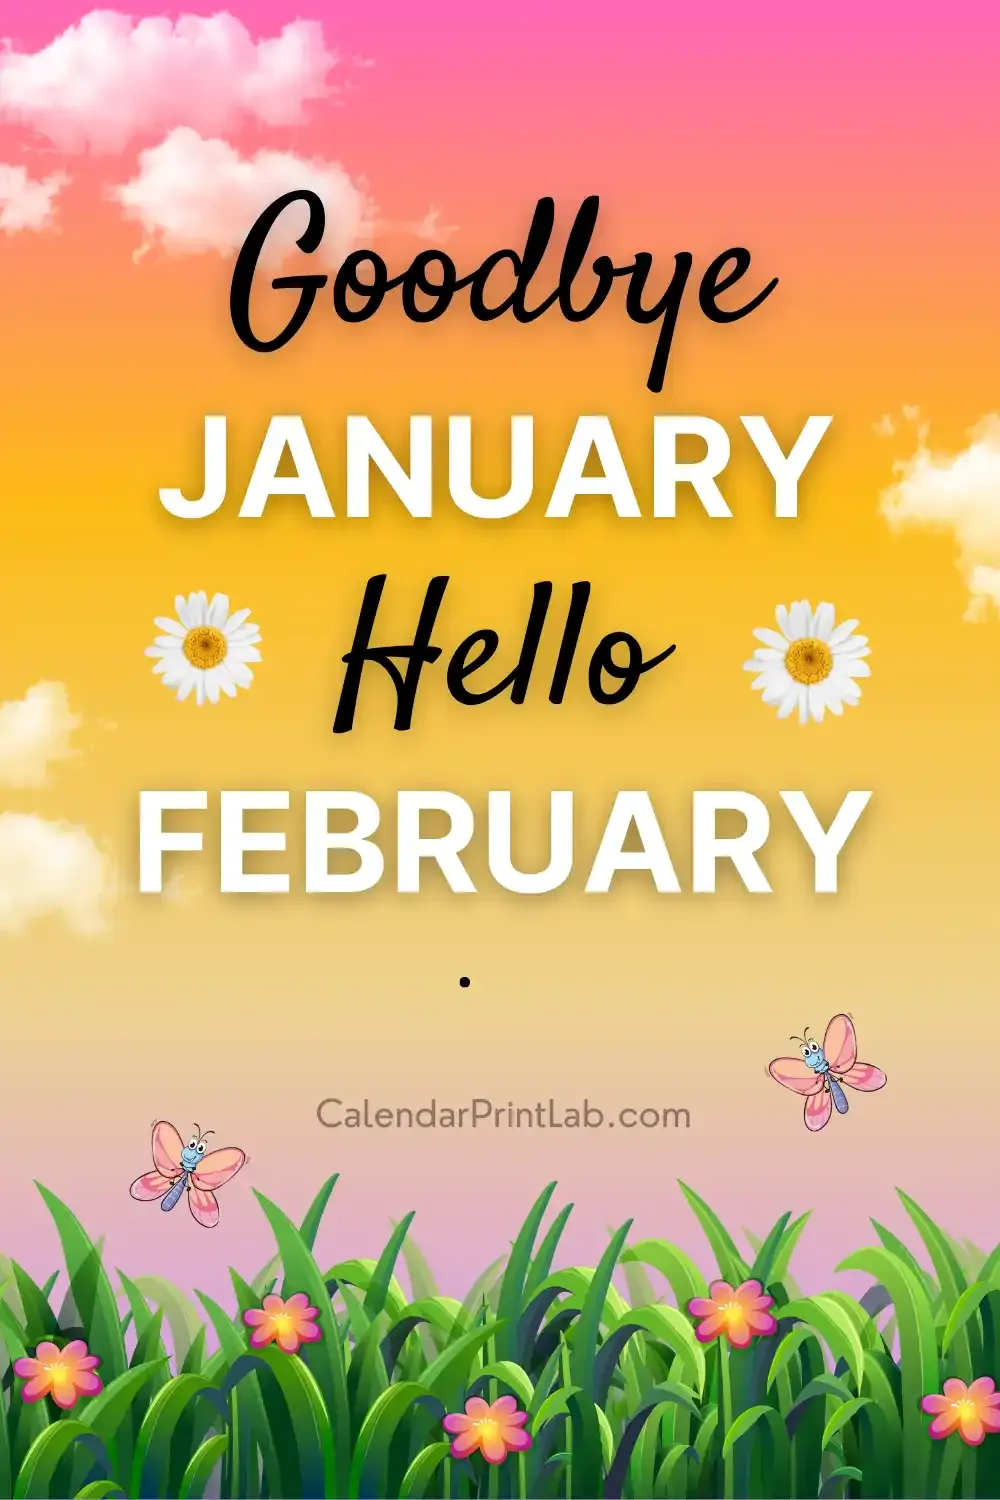 Goodbye January Hello February Status